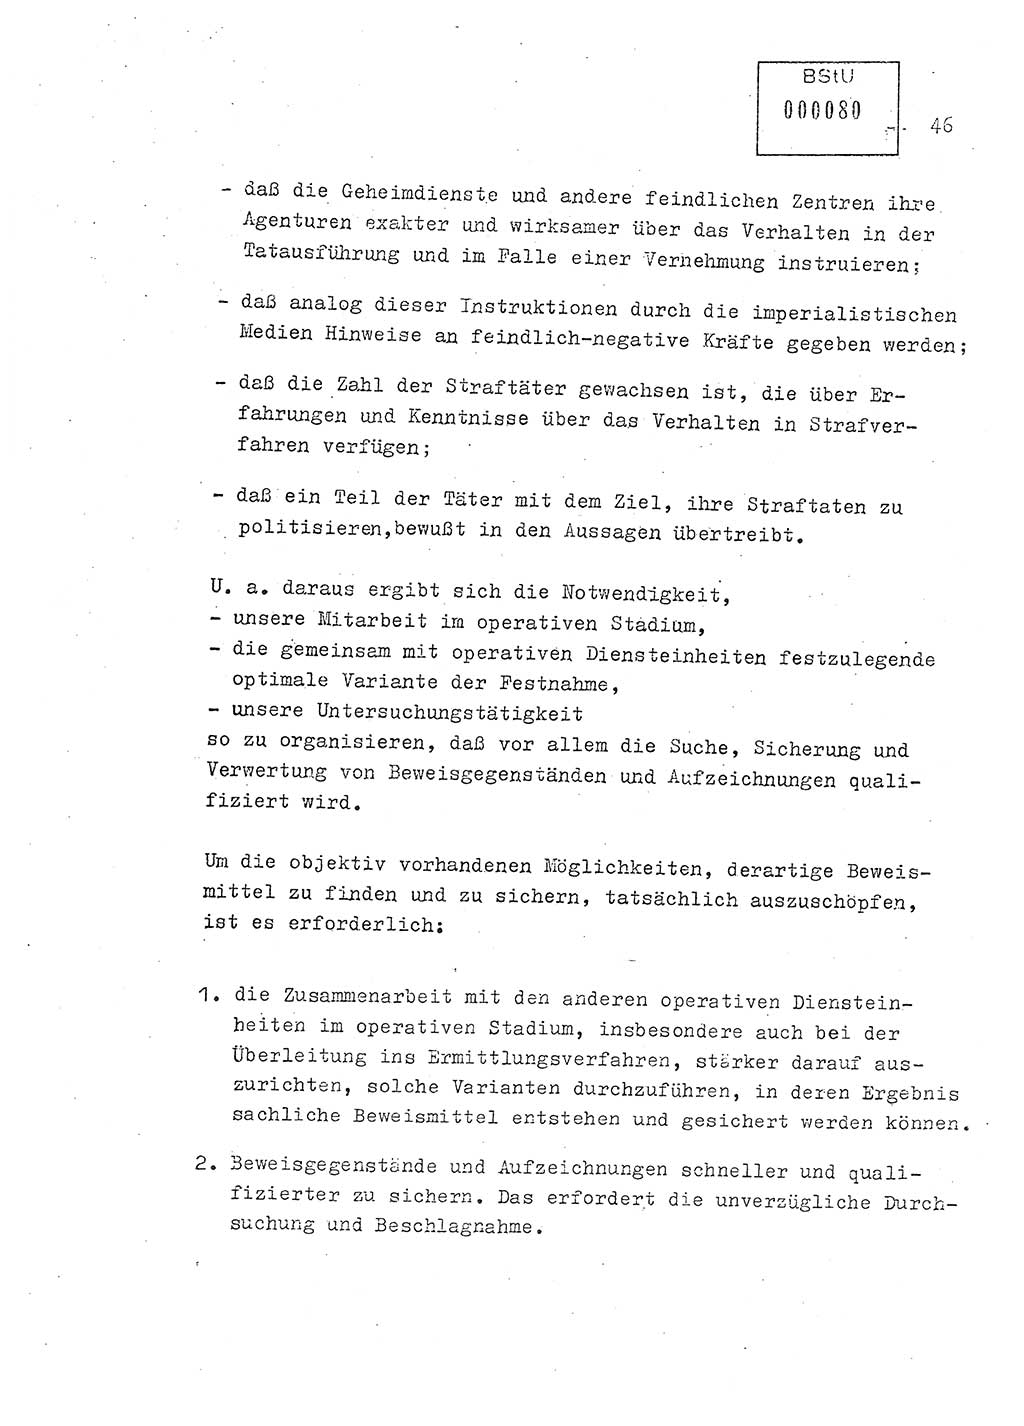 Lektion Ministerium für Staatssicherheit (MfS) [Deutsche Demokratische Republik (DDR)], Hauptabteilung (HA) Ⅸ, Berlin 1979, Seite 46 (Lekt. Bew.-Fü. EV MfS DDR HA Ⅸ 1979, S. 46)